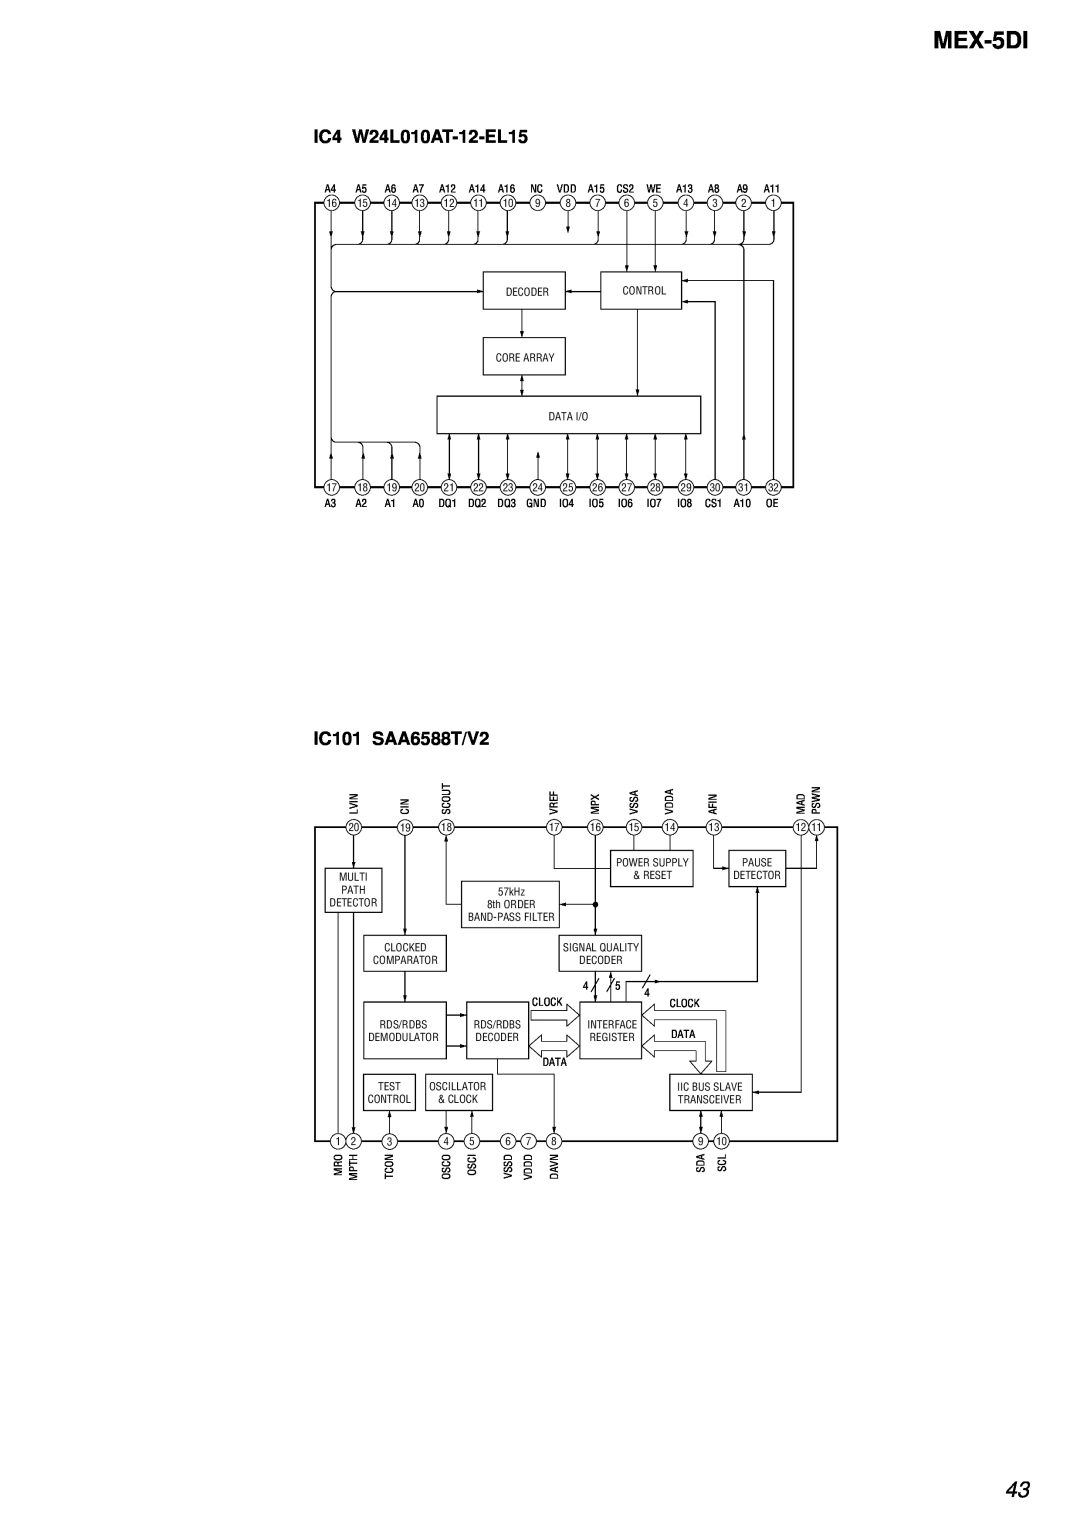 Sony MEX-5DI service manual IC4 W24L010AT-12-EL15, IC101 SAA6588T/V2 